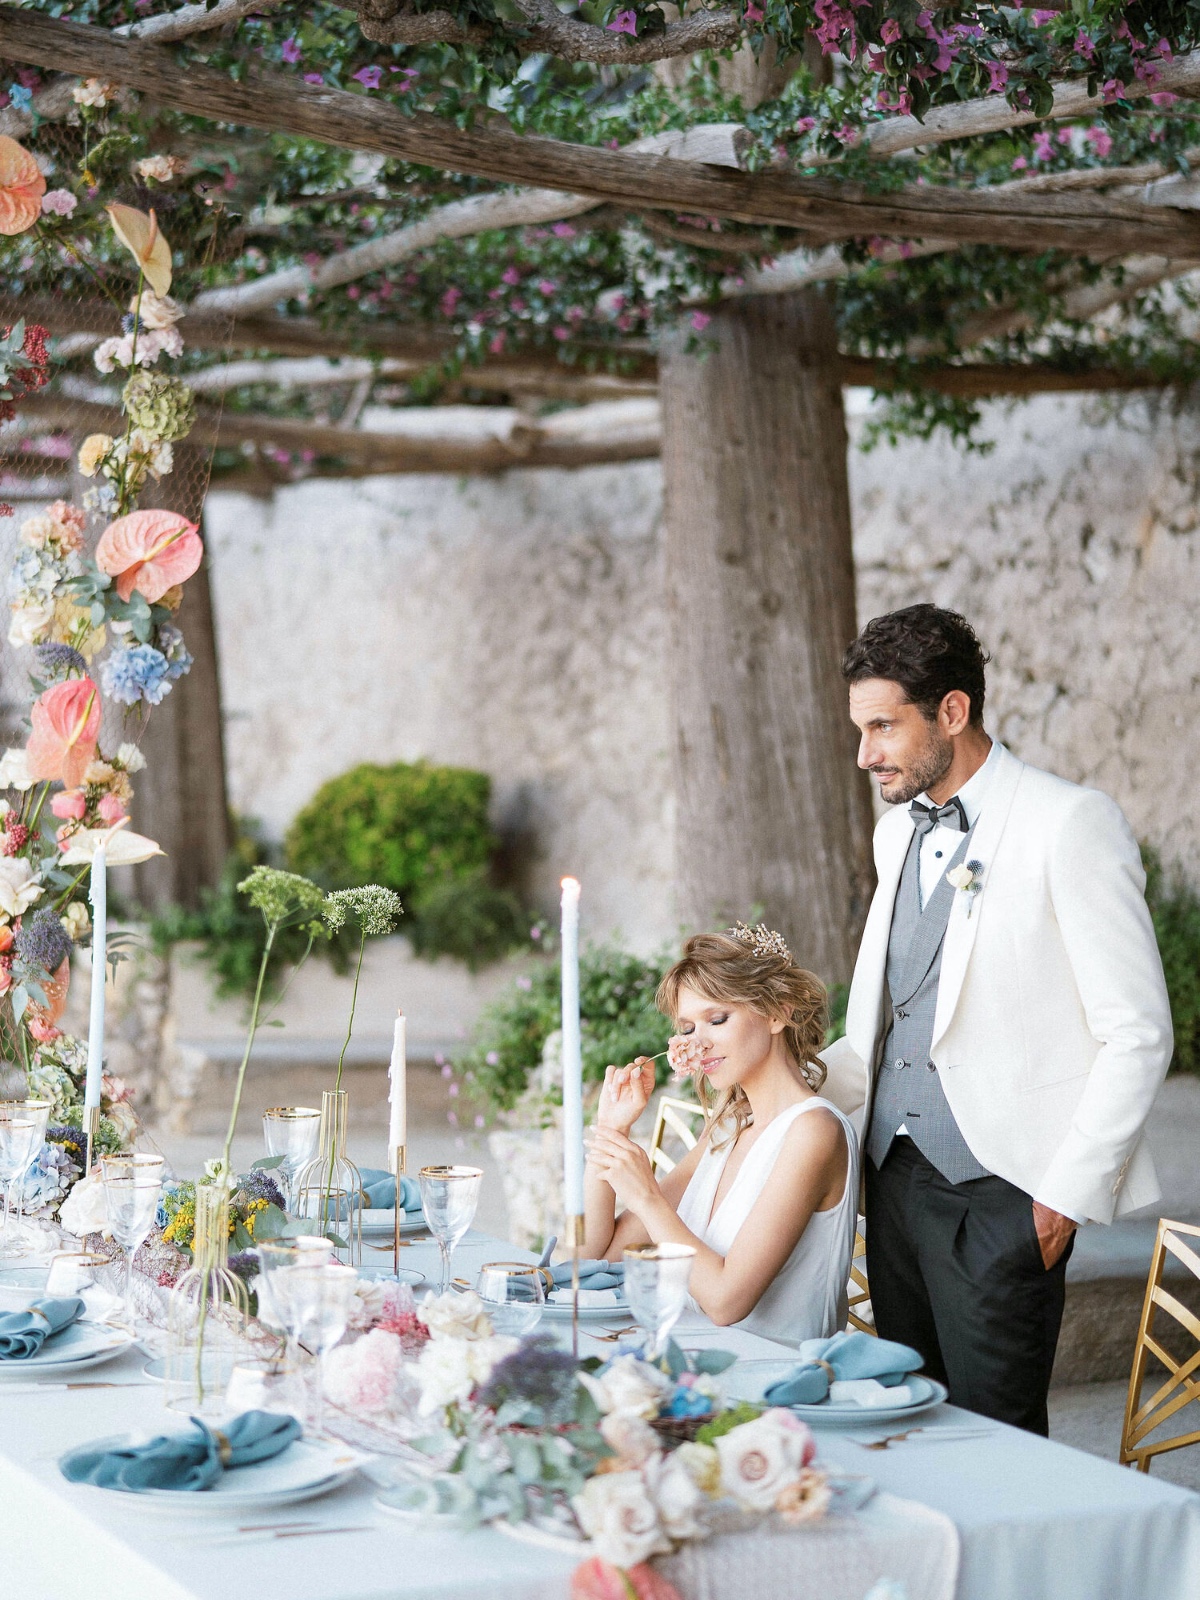 Breathtatking Blue and White Wedding On The Amalfi Coast